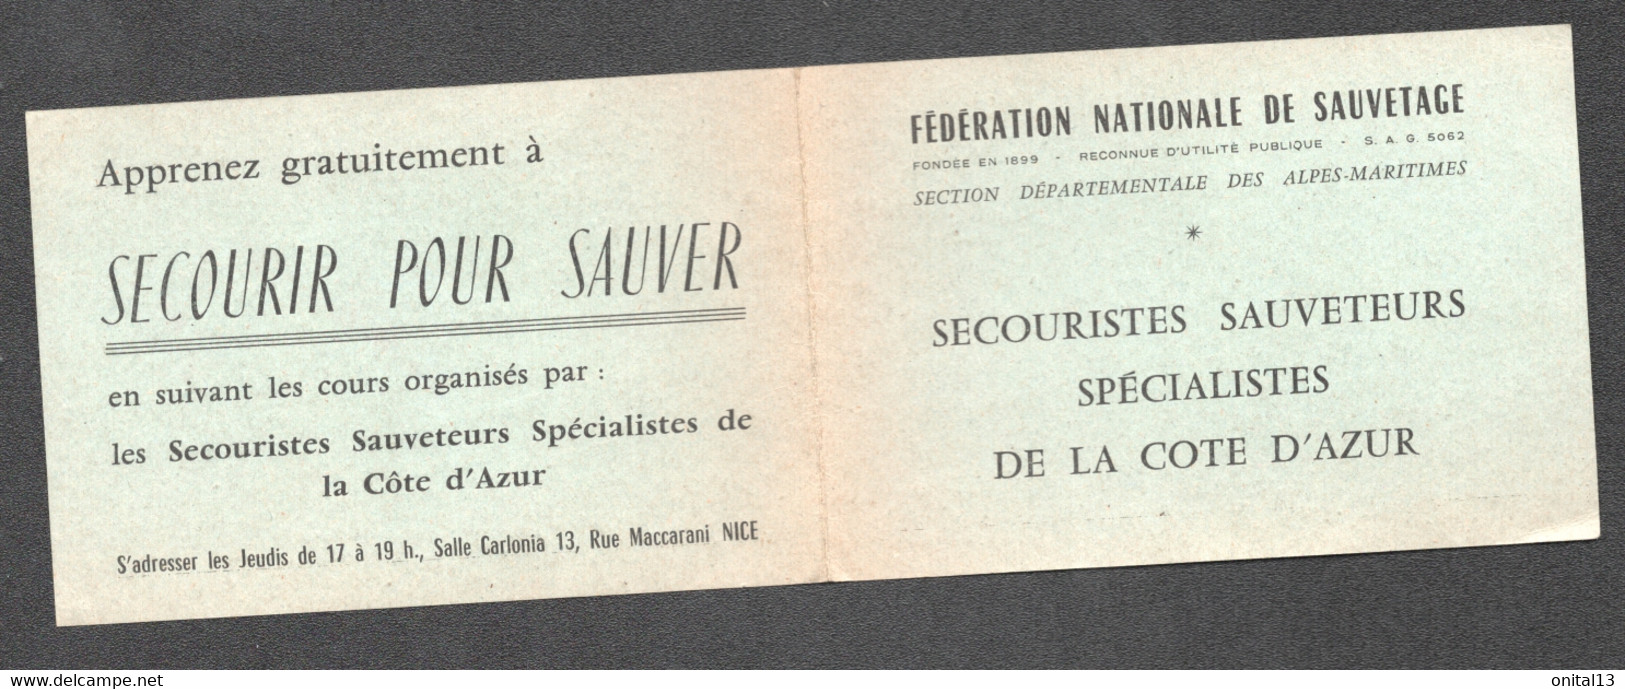 CALENDRIER FEDERATION NATIONALE DE SAUVETAGE  / ALPES MARITIME / SECOURISTES SAUVETEURS COTE D'AZUR  D71 - Petit Format : 1961-70